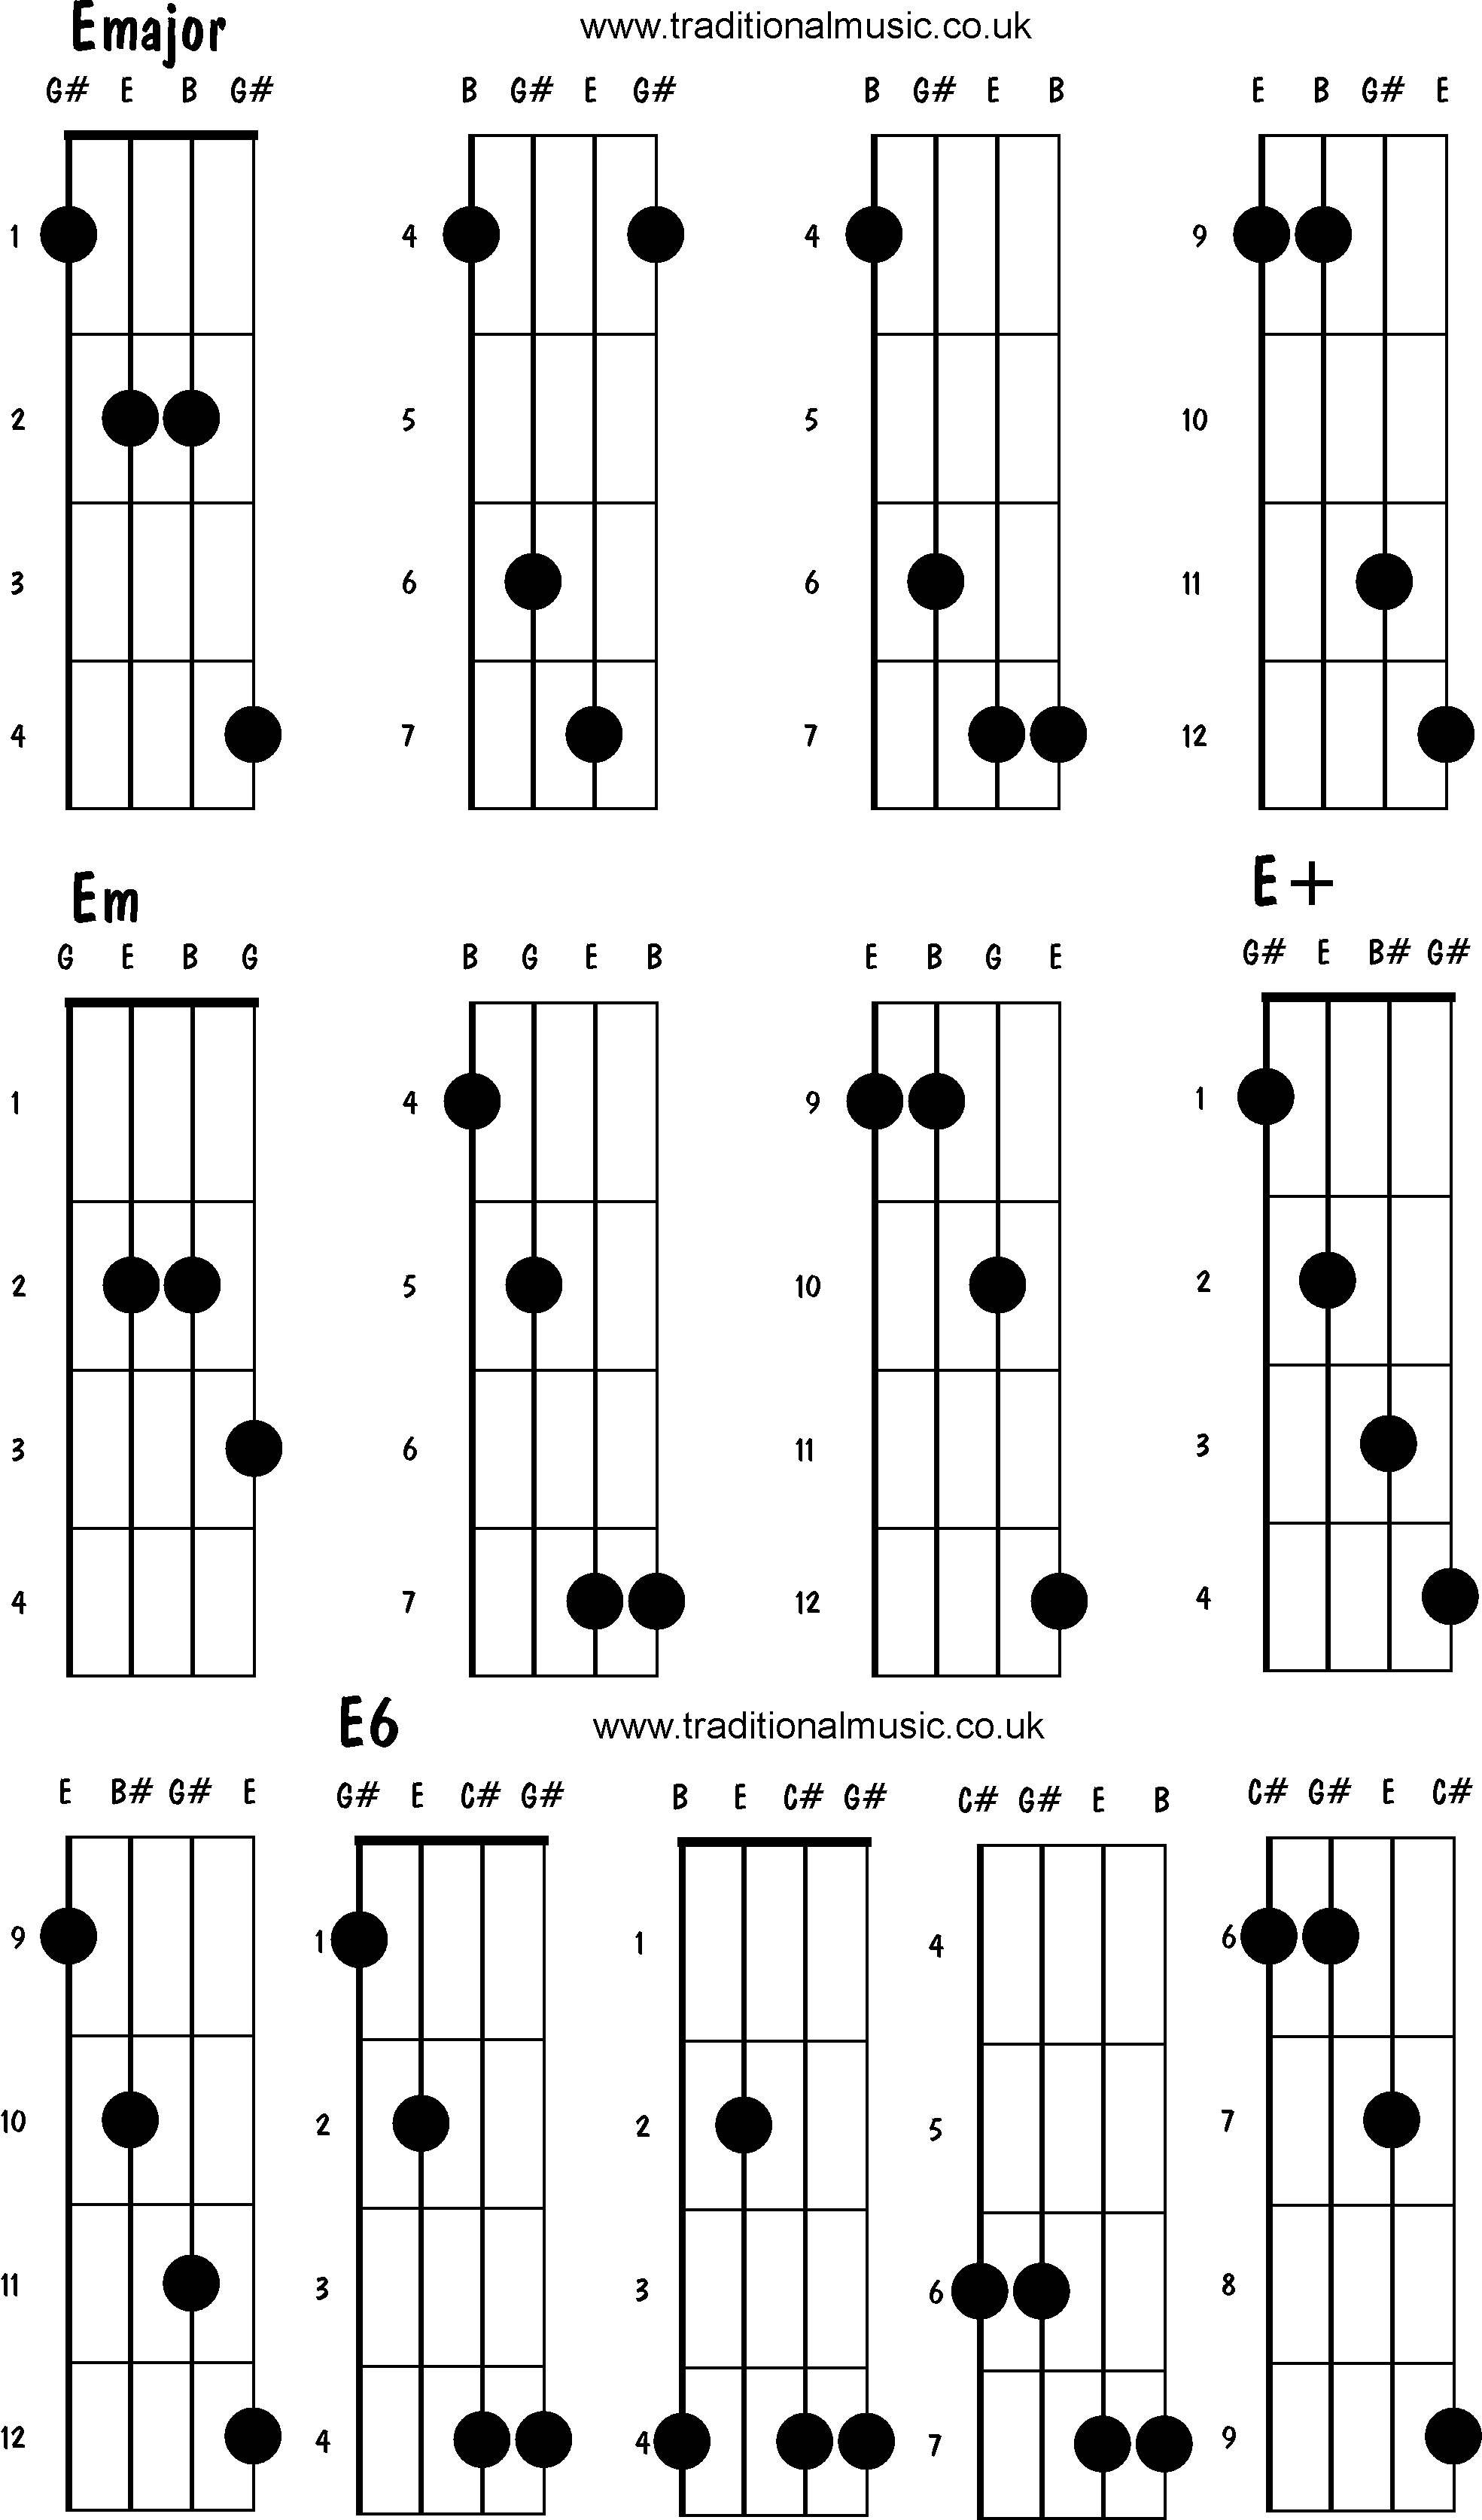 Advanced mandolin chords: Emajor, Em, E6